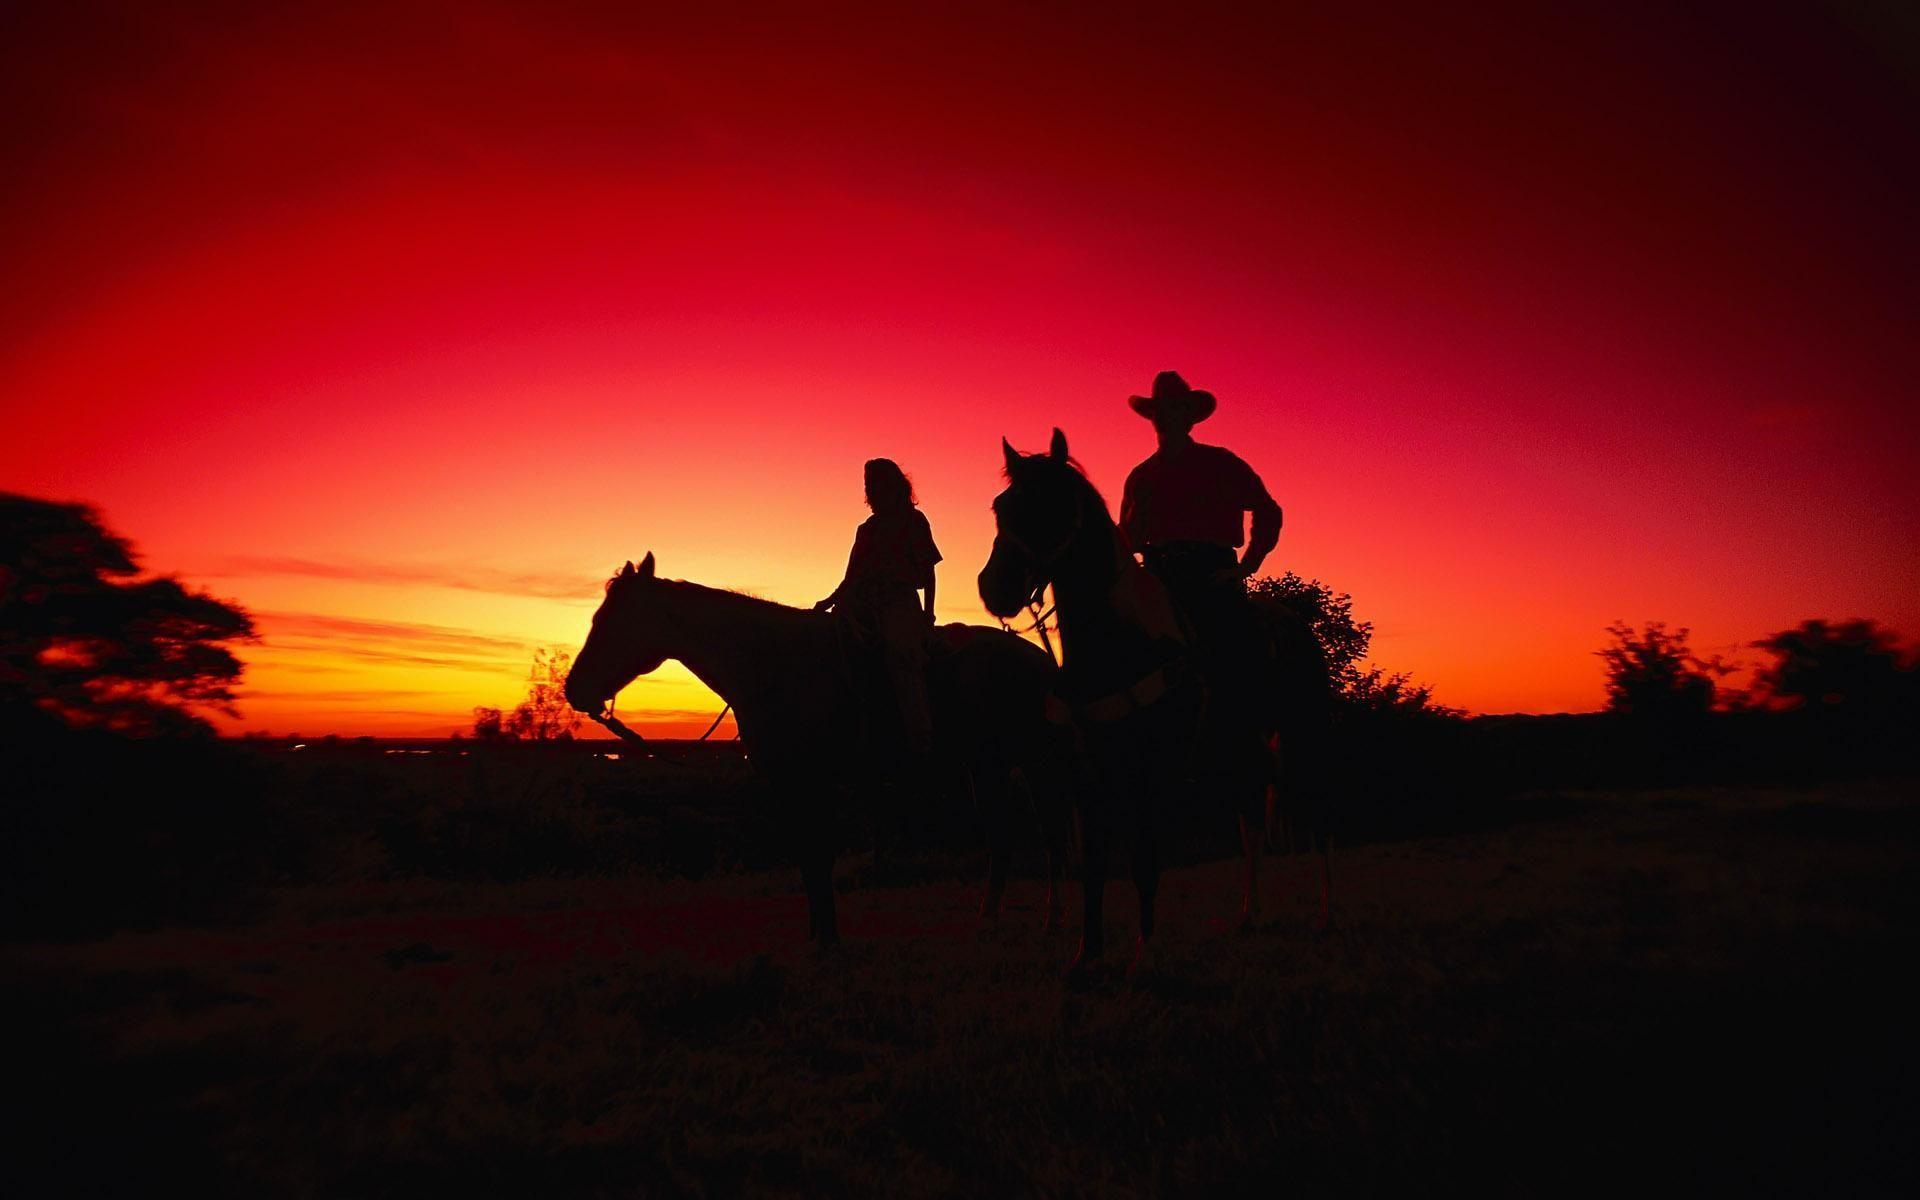 Western Cowboy Scene Desktop Wallpapers Top Free Western Cowboy Scene